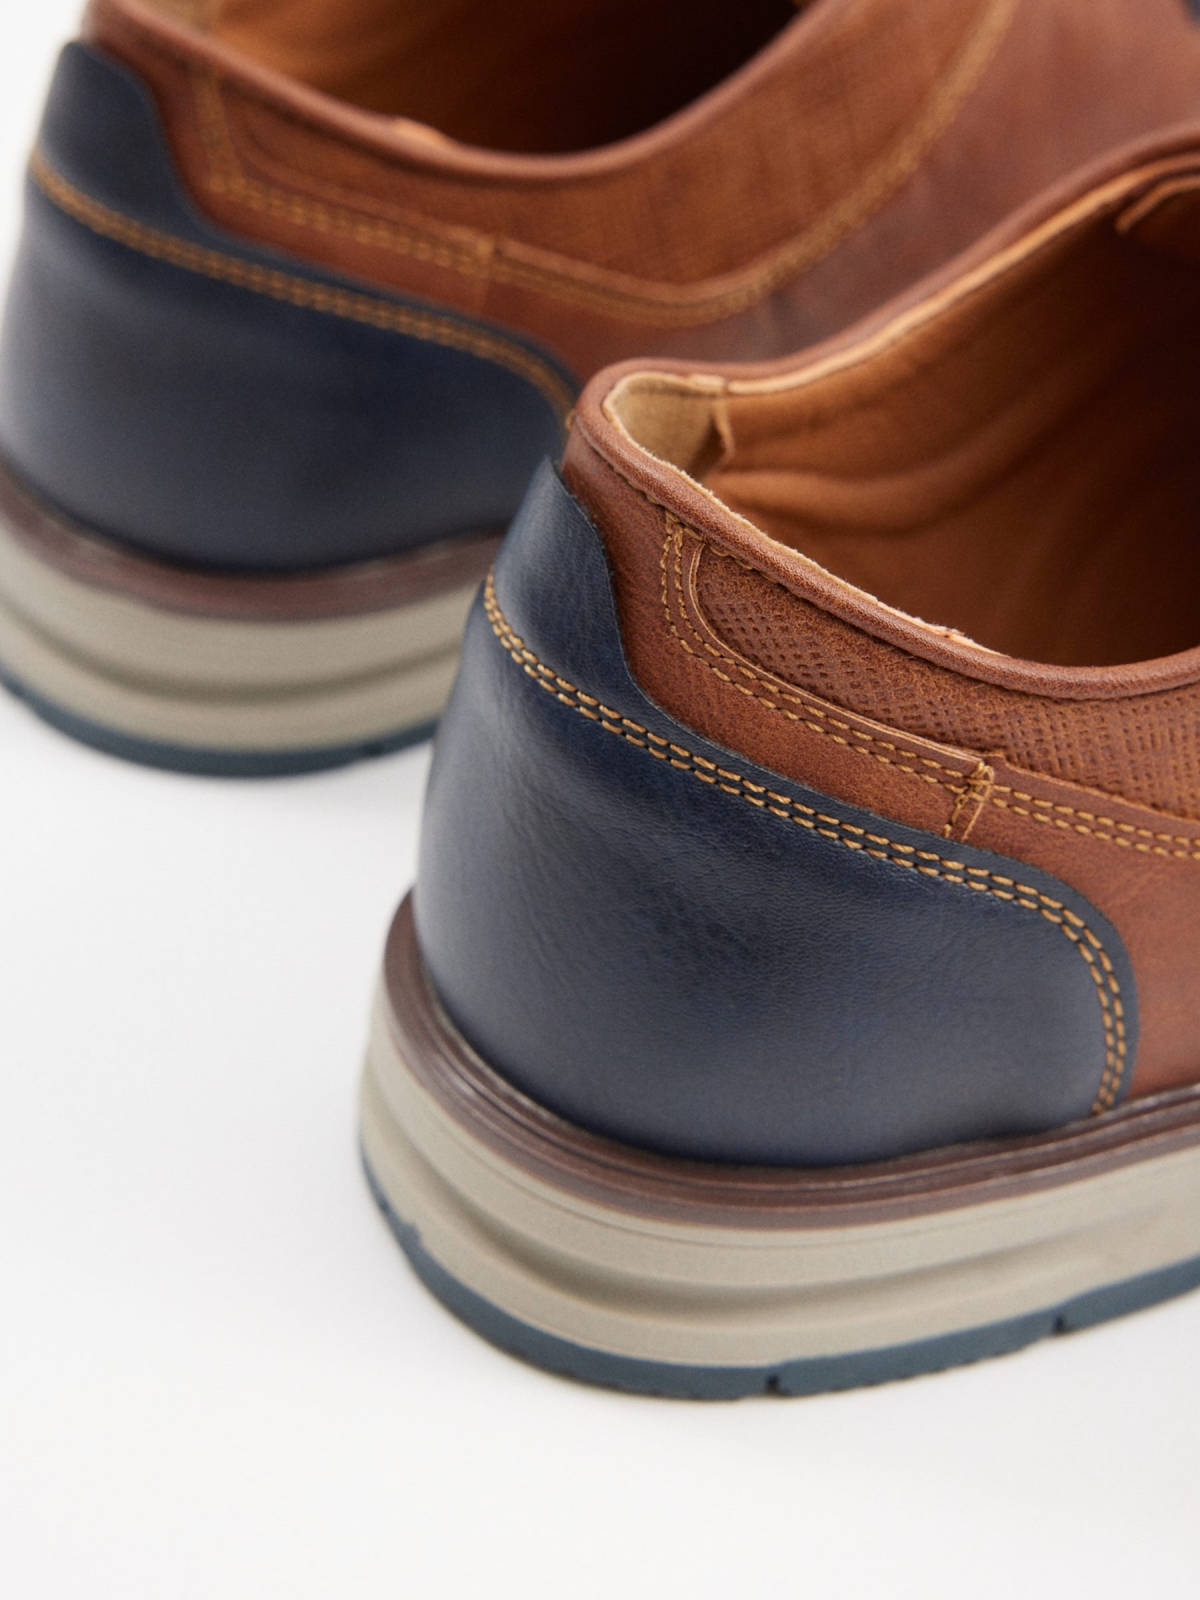 Clássico sapato combinado de blucher marrom claro vista detalhe